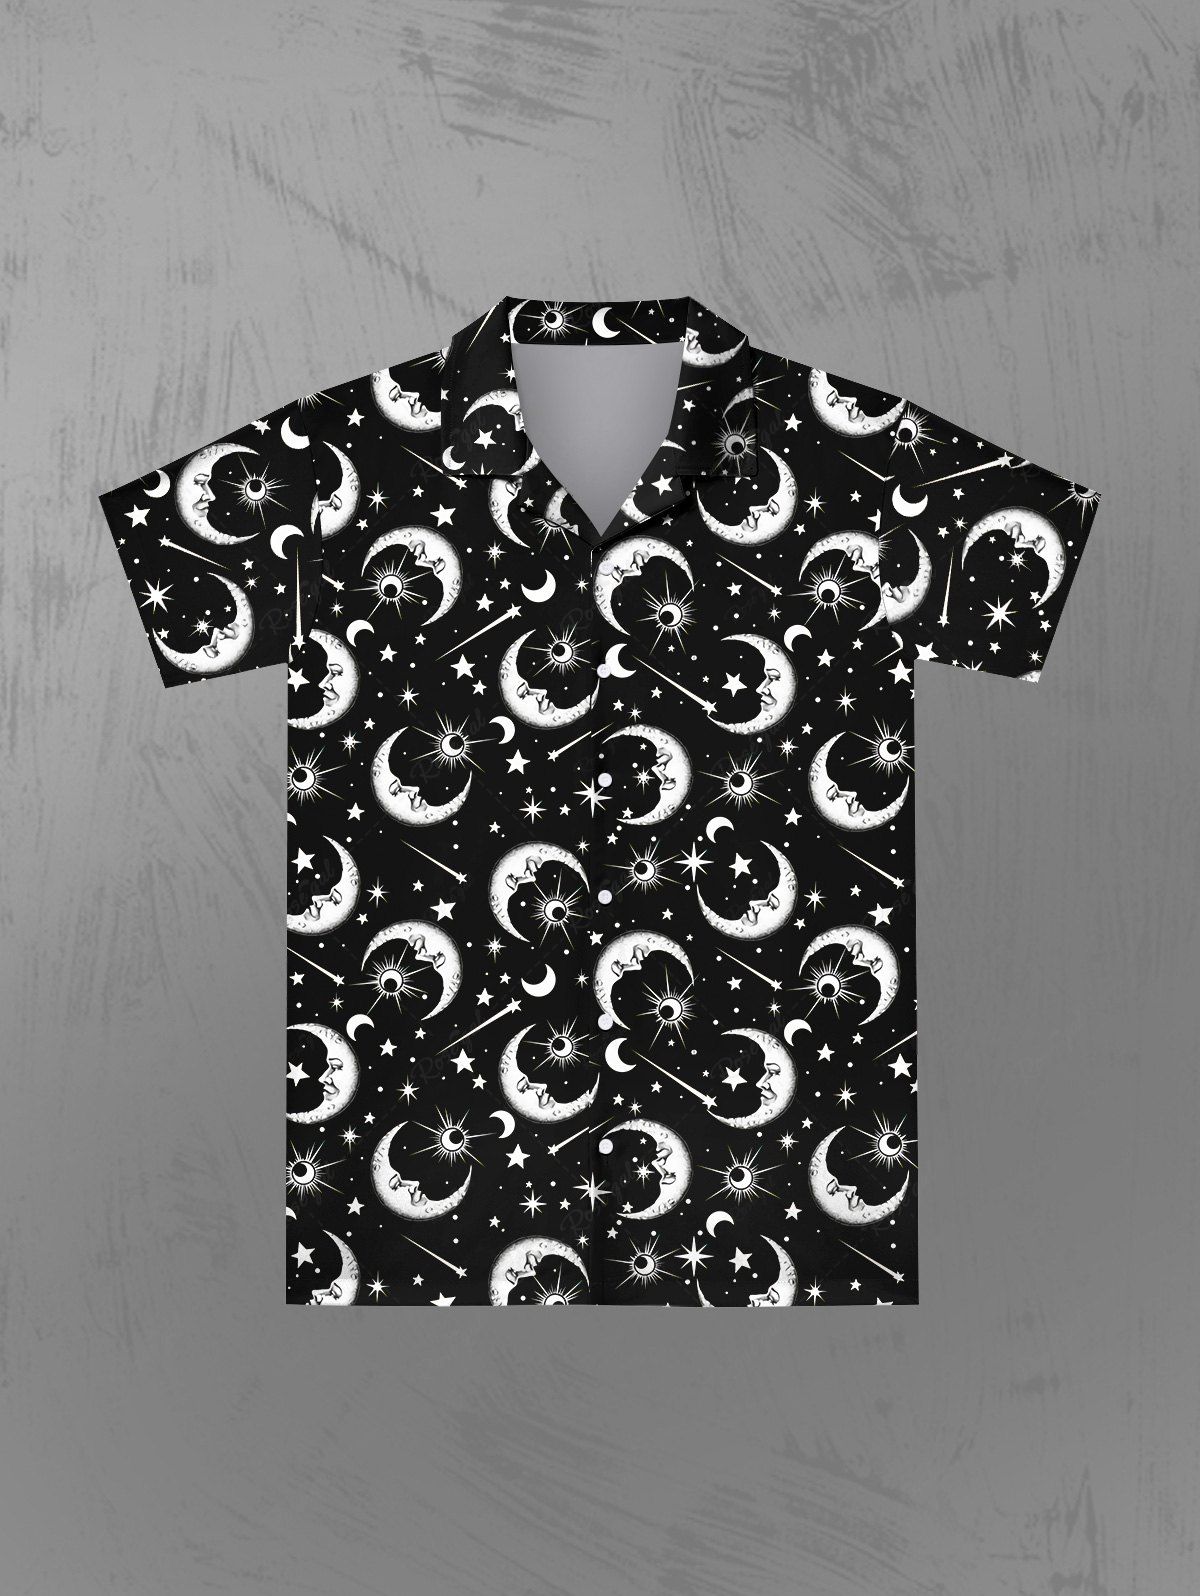 Hot Gothic Galaxy Sun Moon Star Print Button Down Shirt For Men  